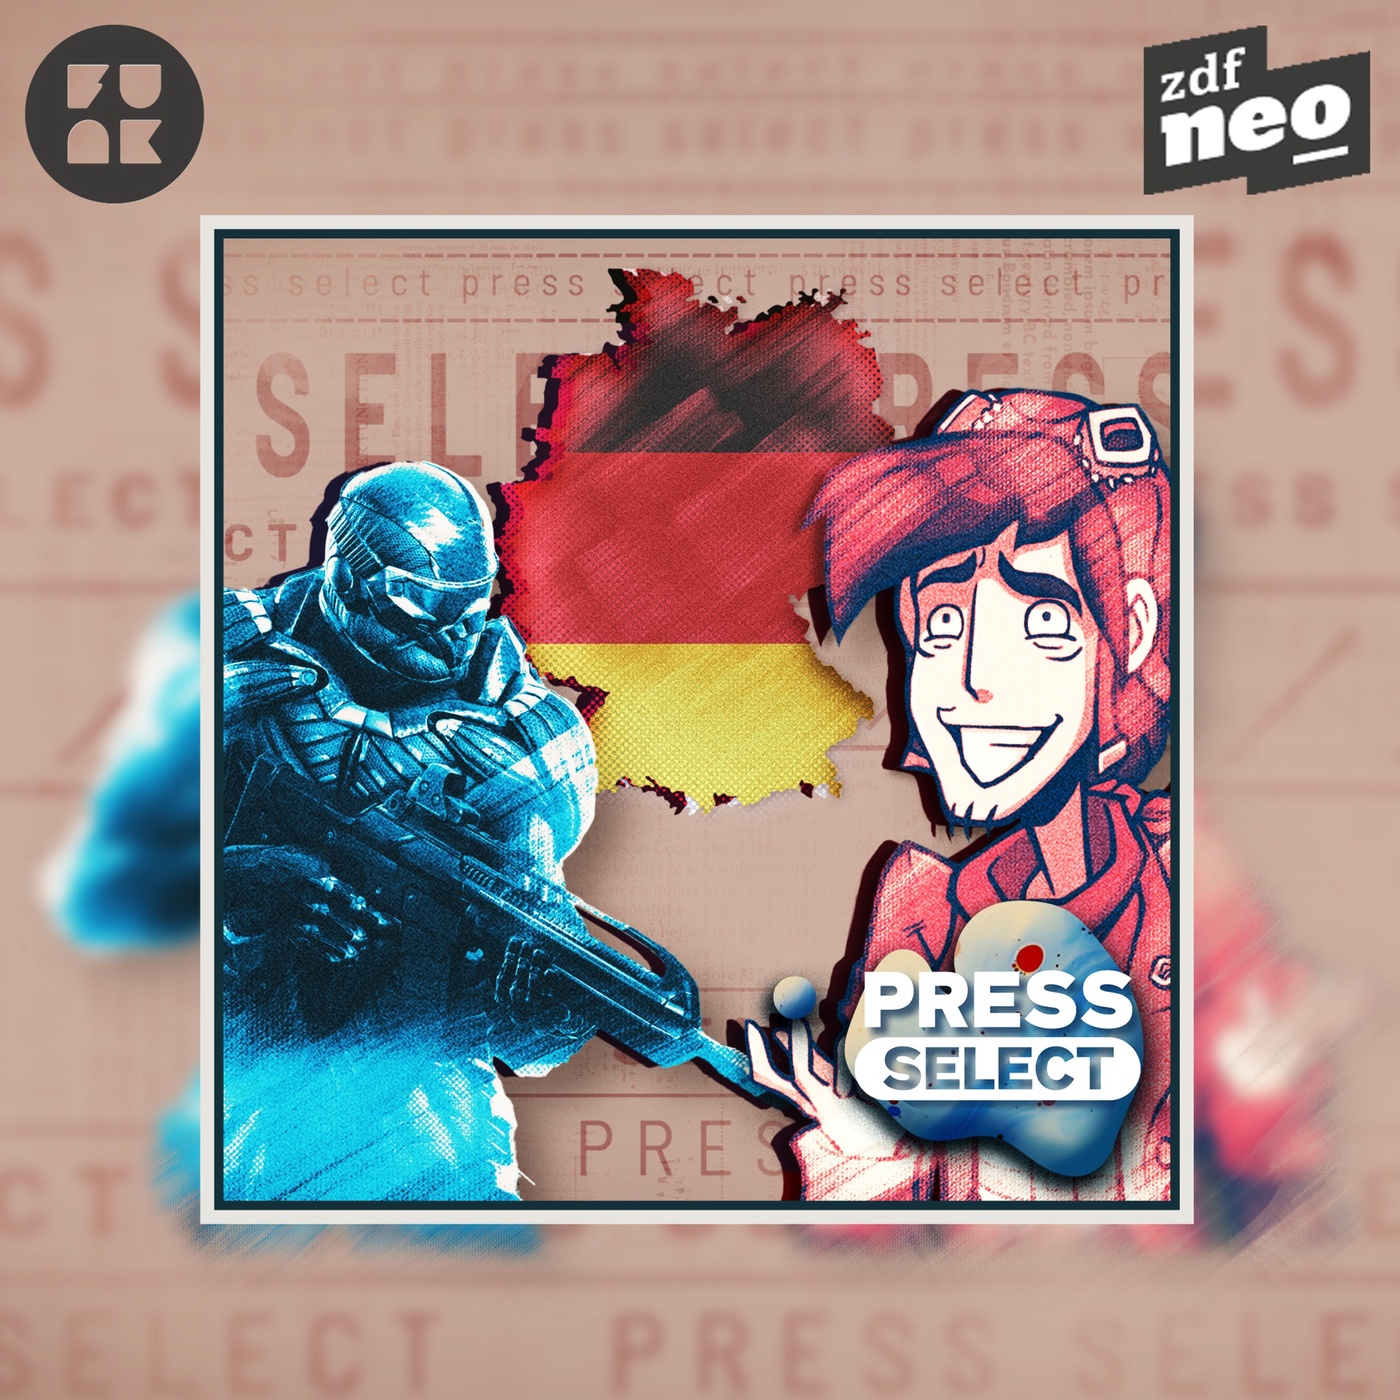 Deutsche Gamesbranche - so schlecht, wie ihr Ruf? | Press Select #2